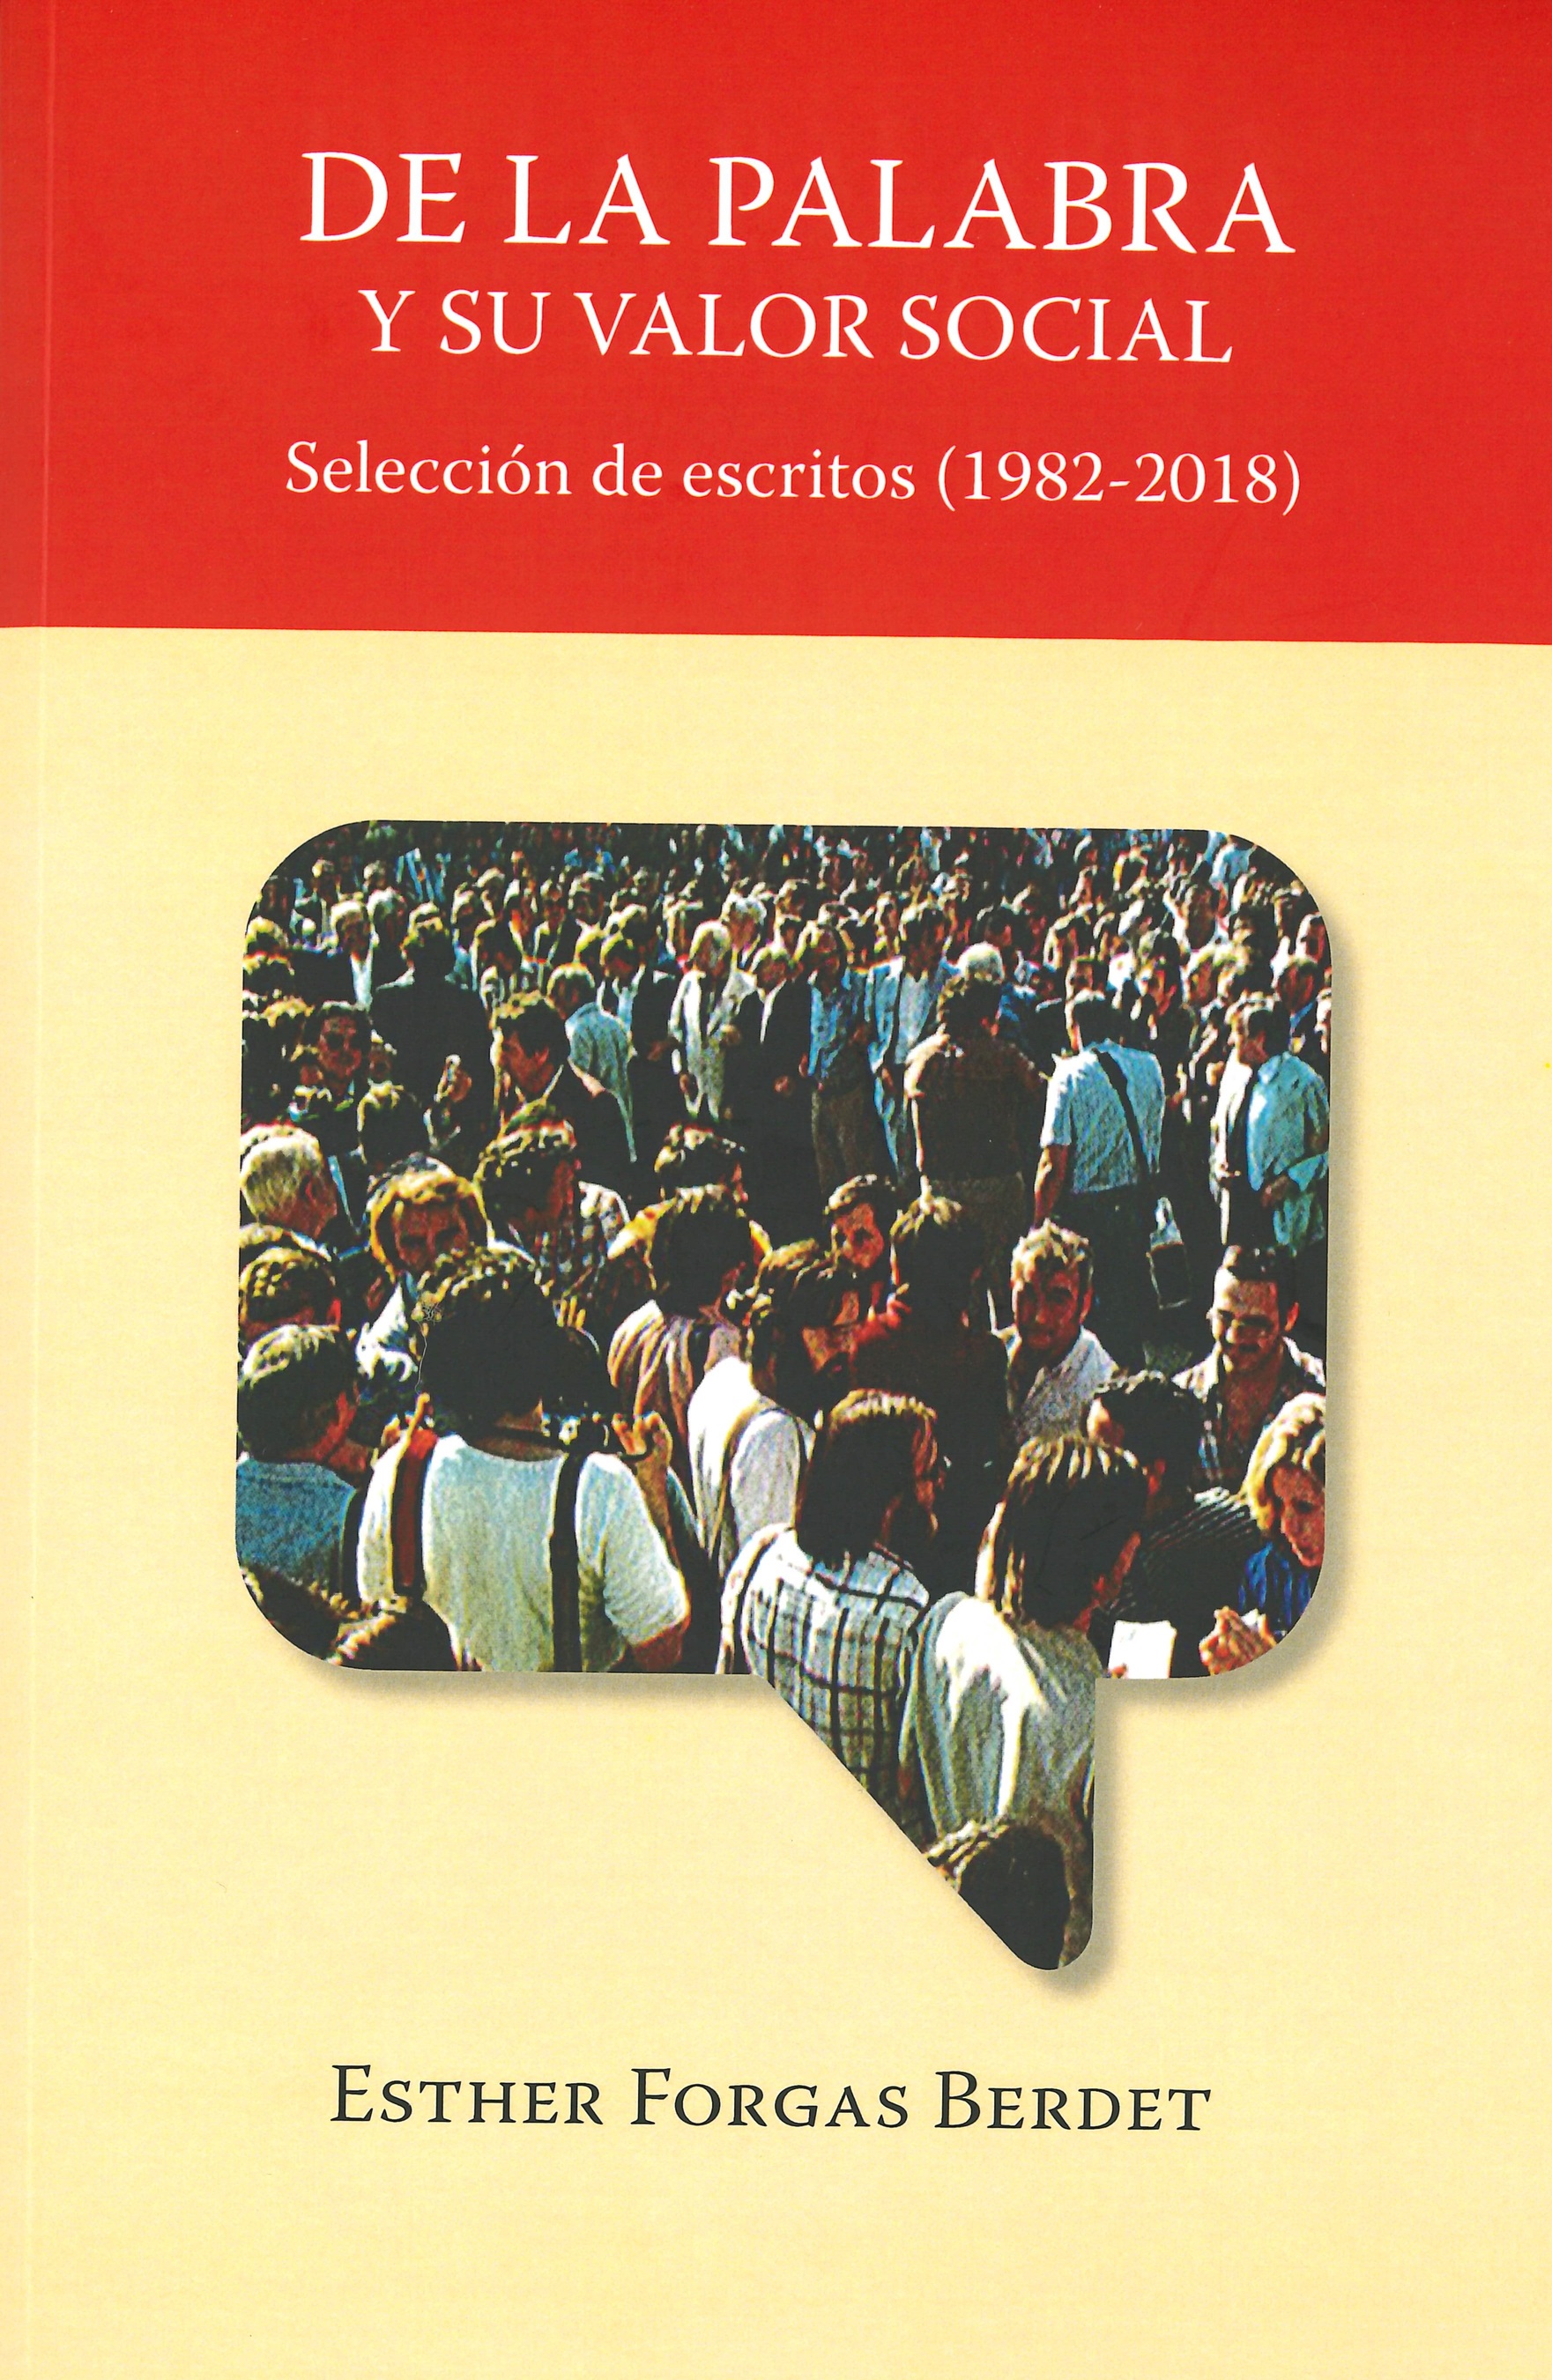 Imagen de portada del libro De la palabra y su valor social.